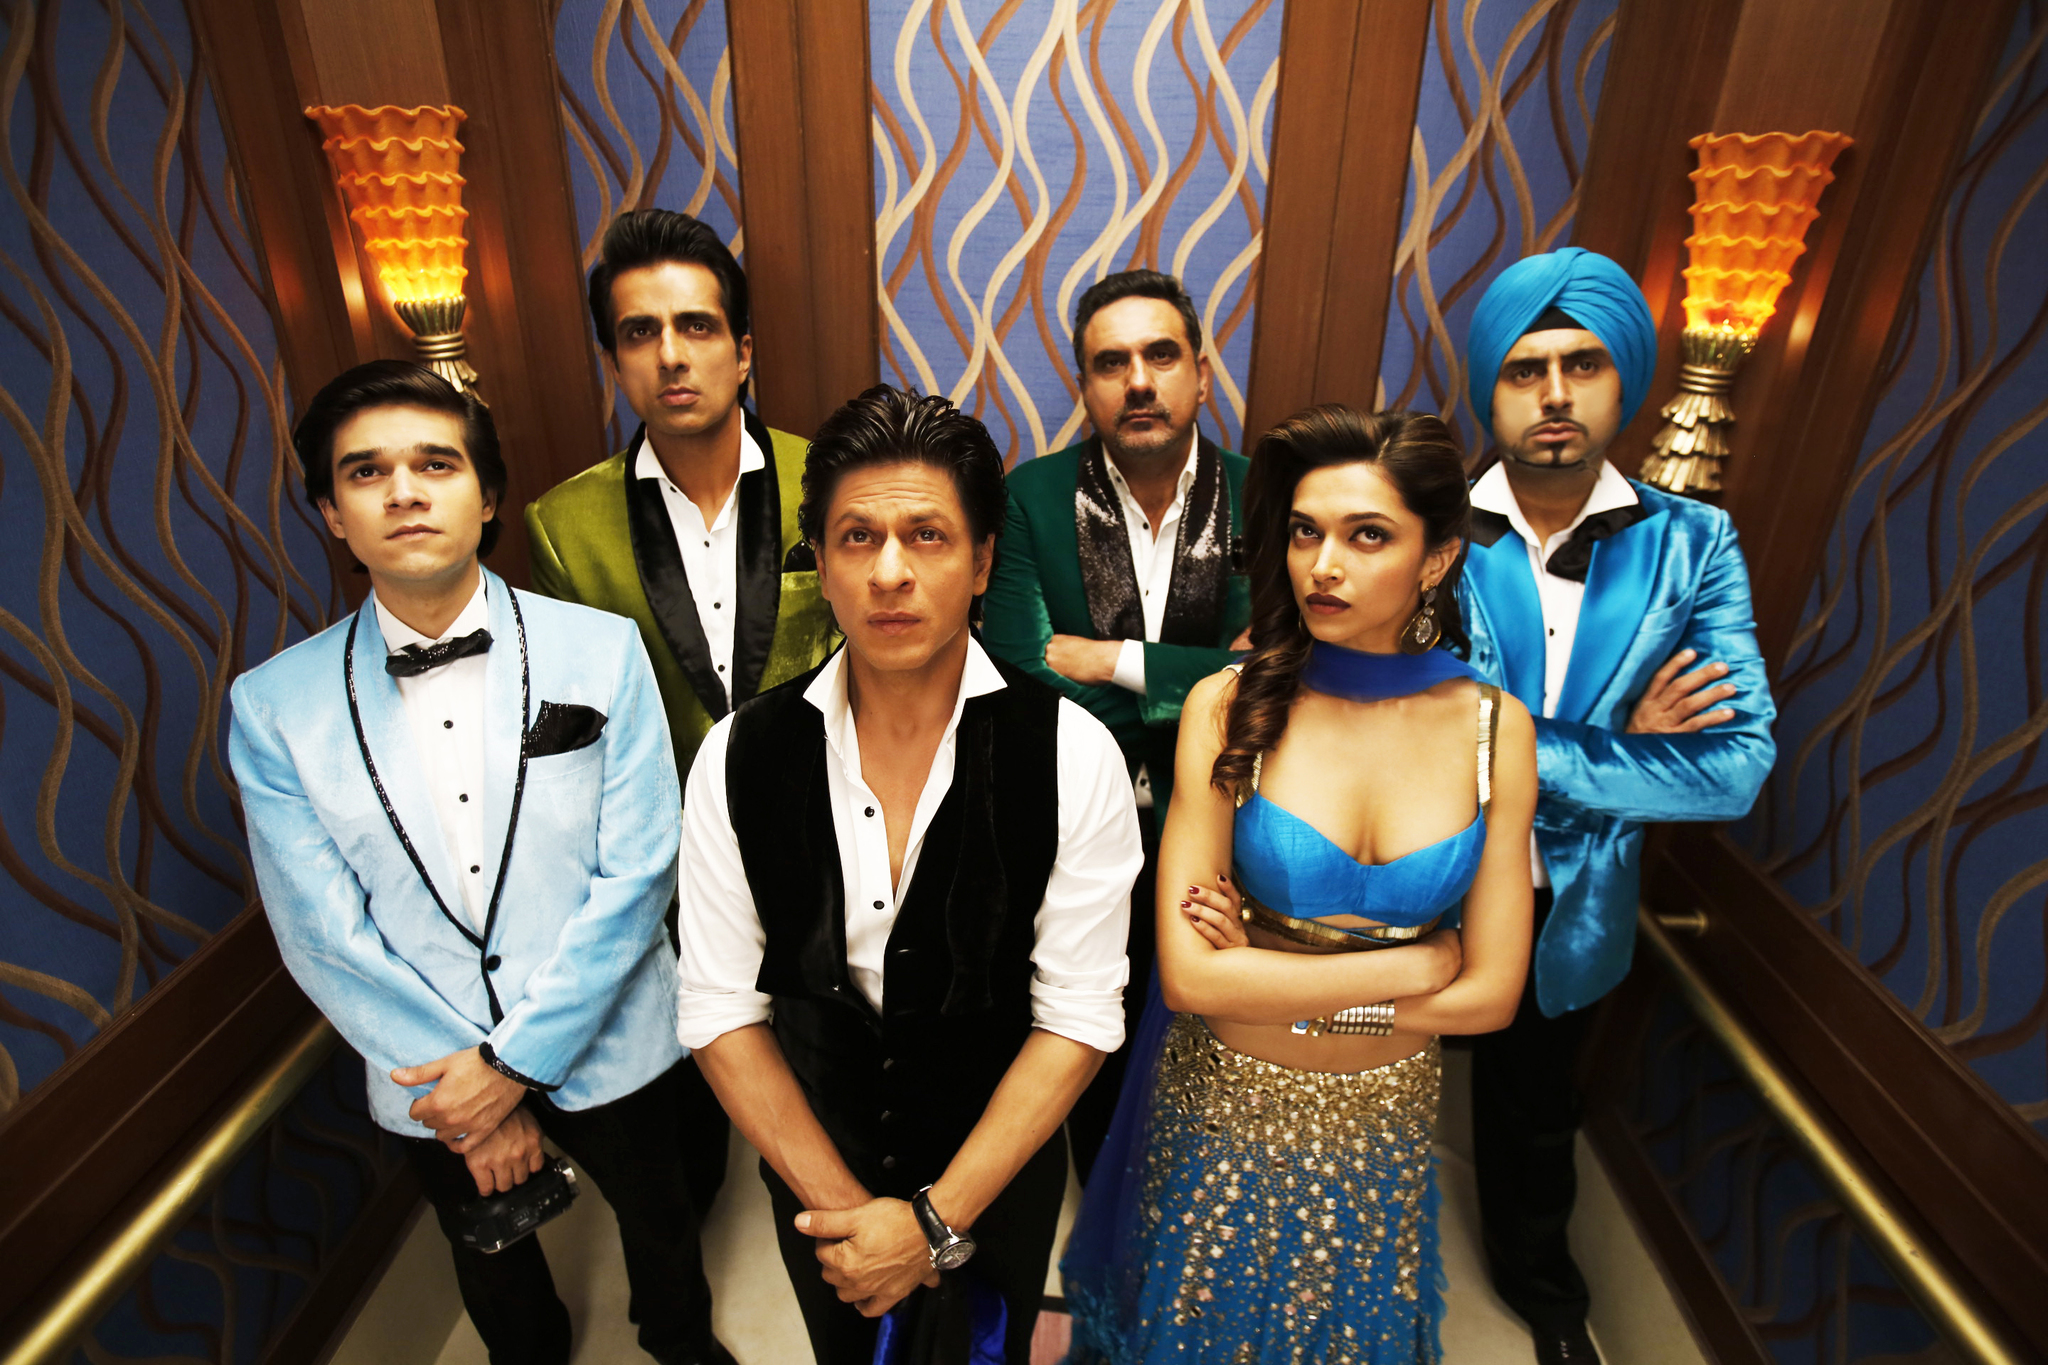 Shah Rukh Khan and Deepika Padukone hit movies